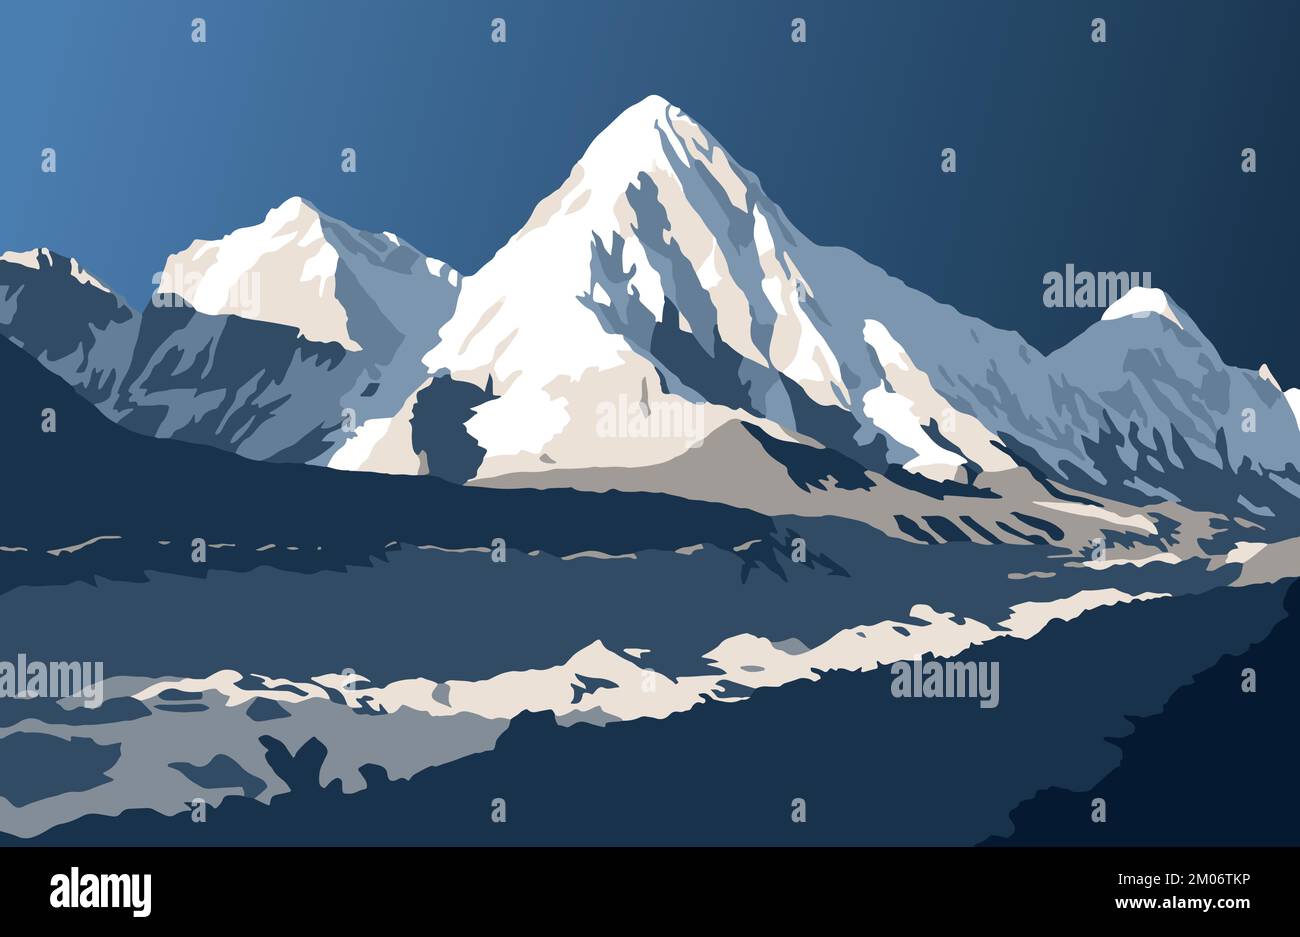 Khumbu glacier and Mount Pumori, vector illustration, Khumbu valley, Sagarmatha national park, Nepal Himalaya mountain Stock Vector